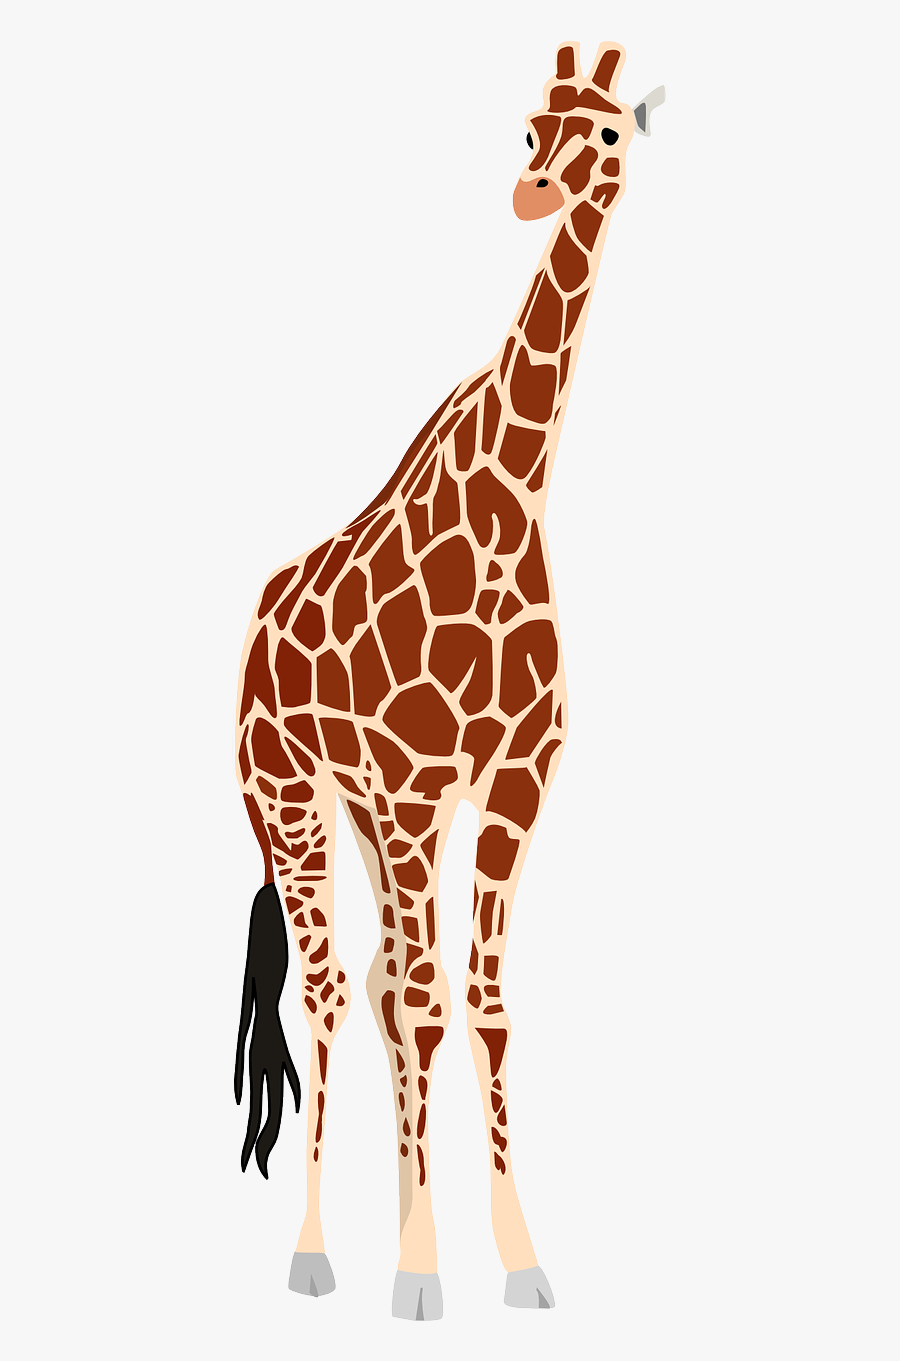 Giraffes Clipart, Transparent Clipart